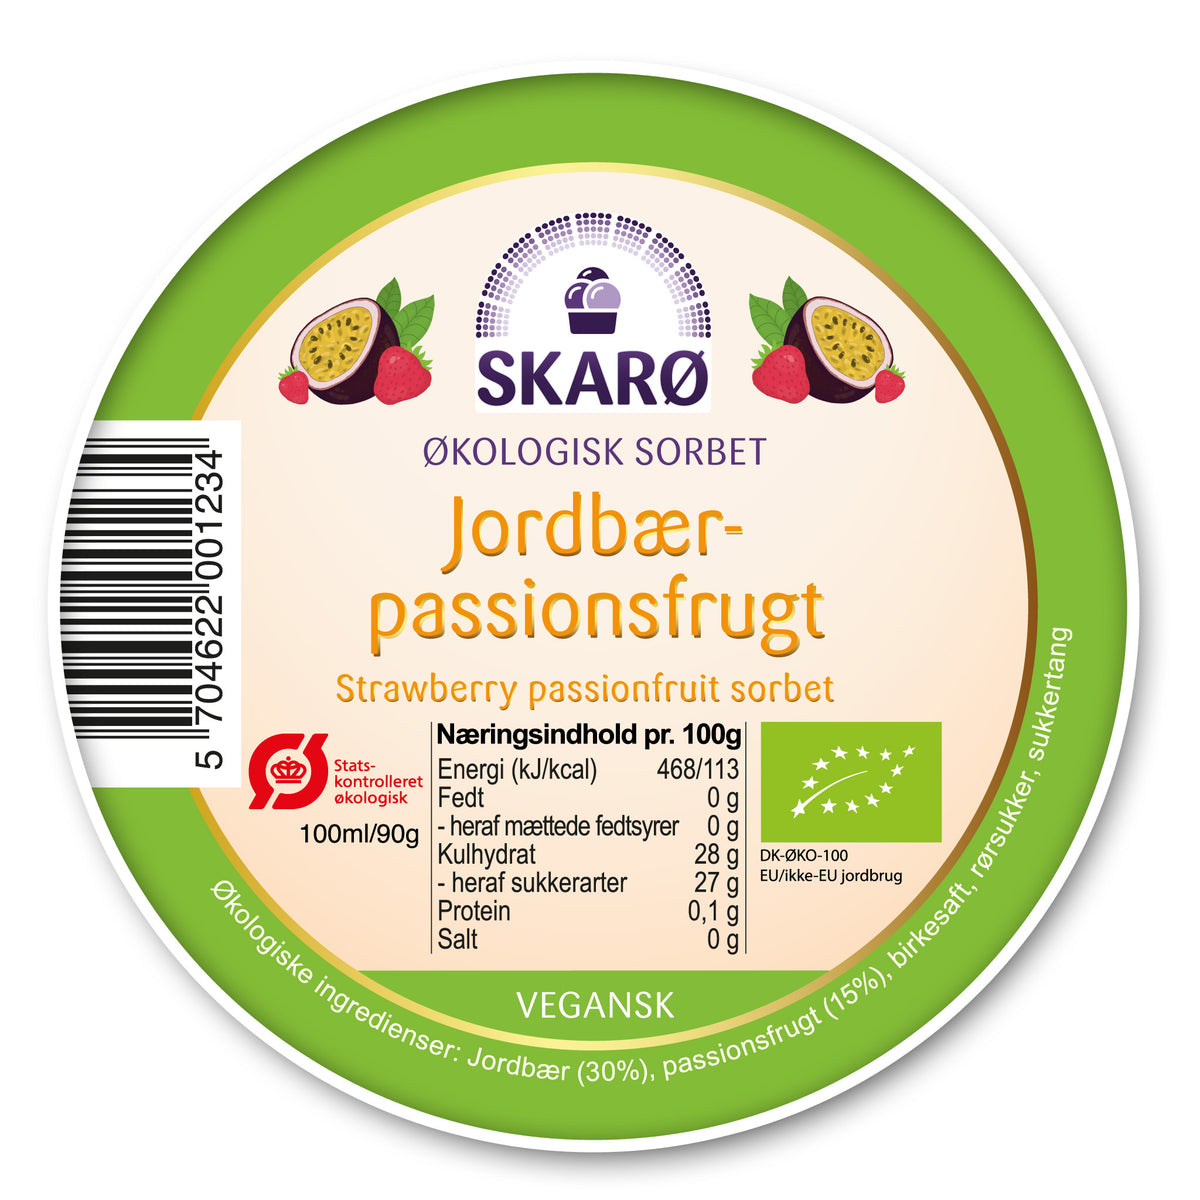 Økologisk vegansk sorbet med Jordbær og passionsfrugt - is fra Skarø